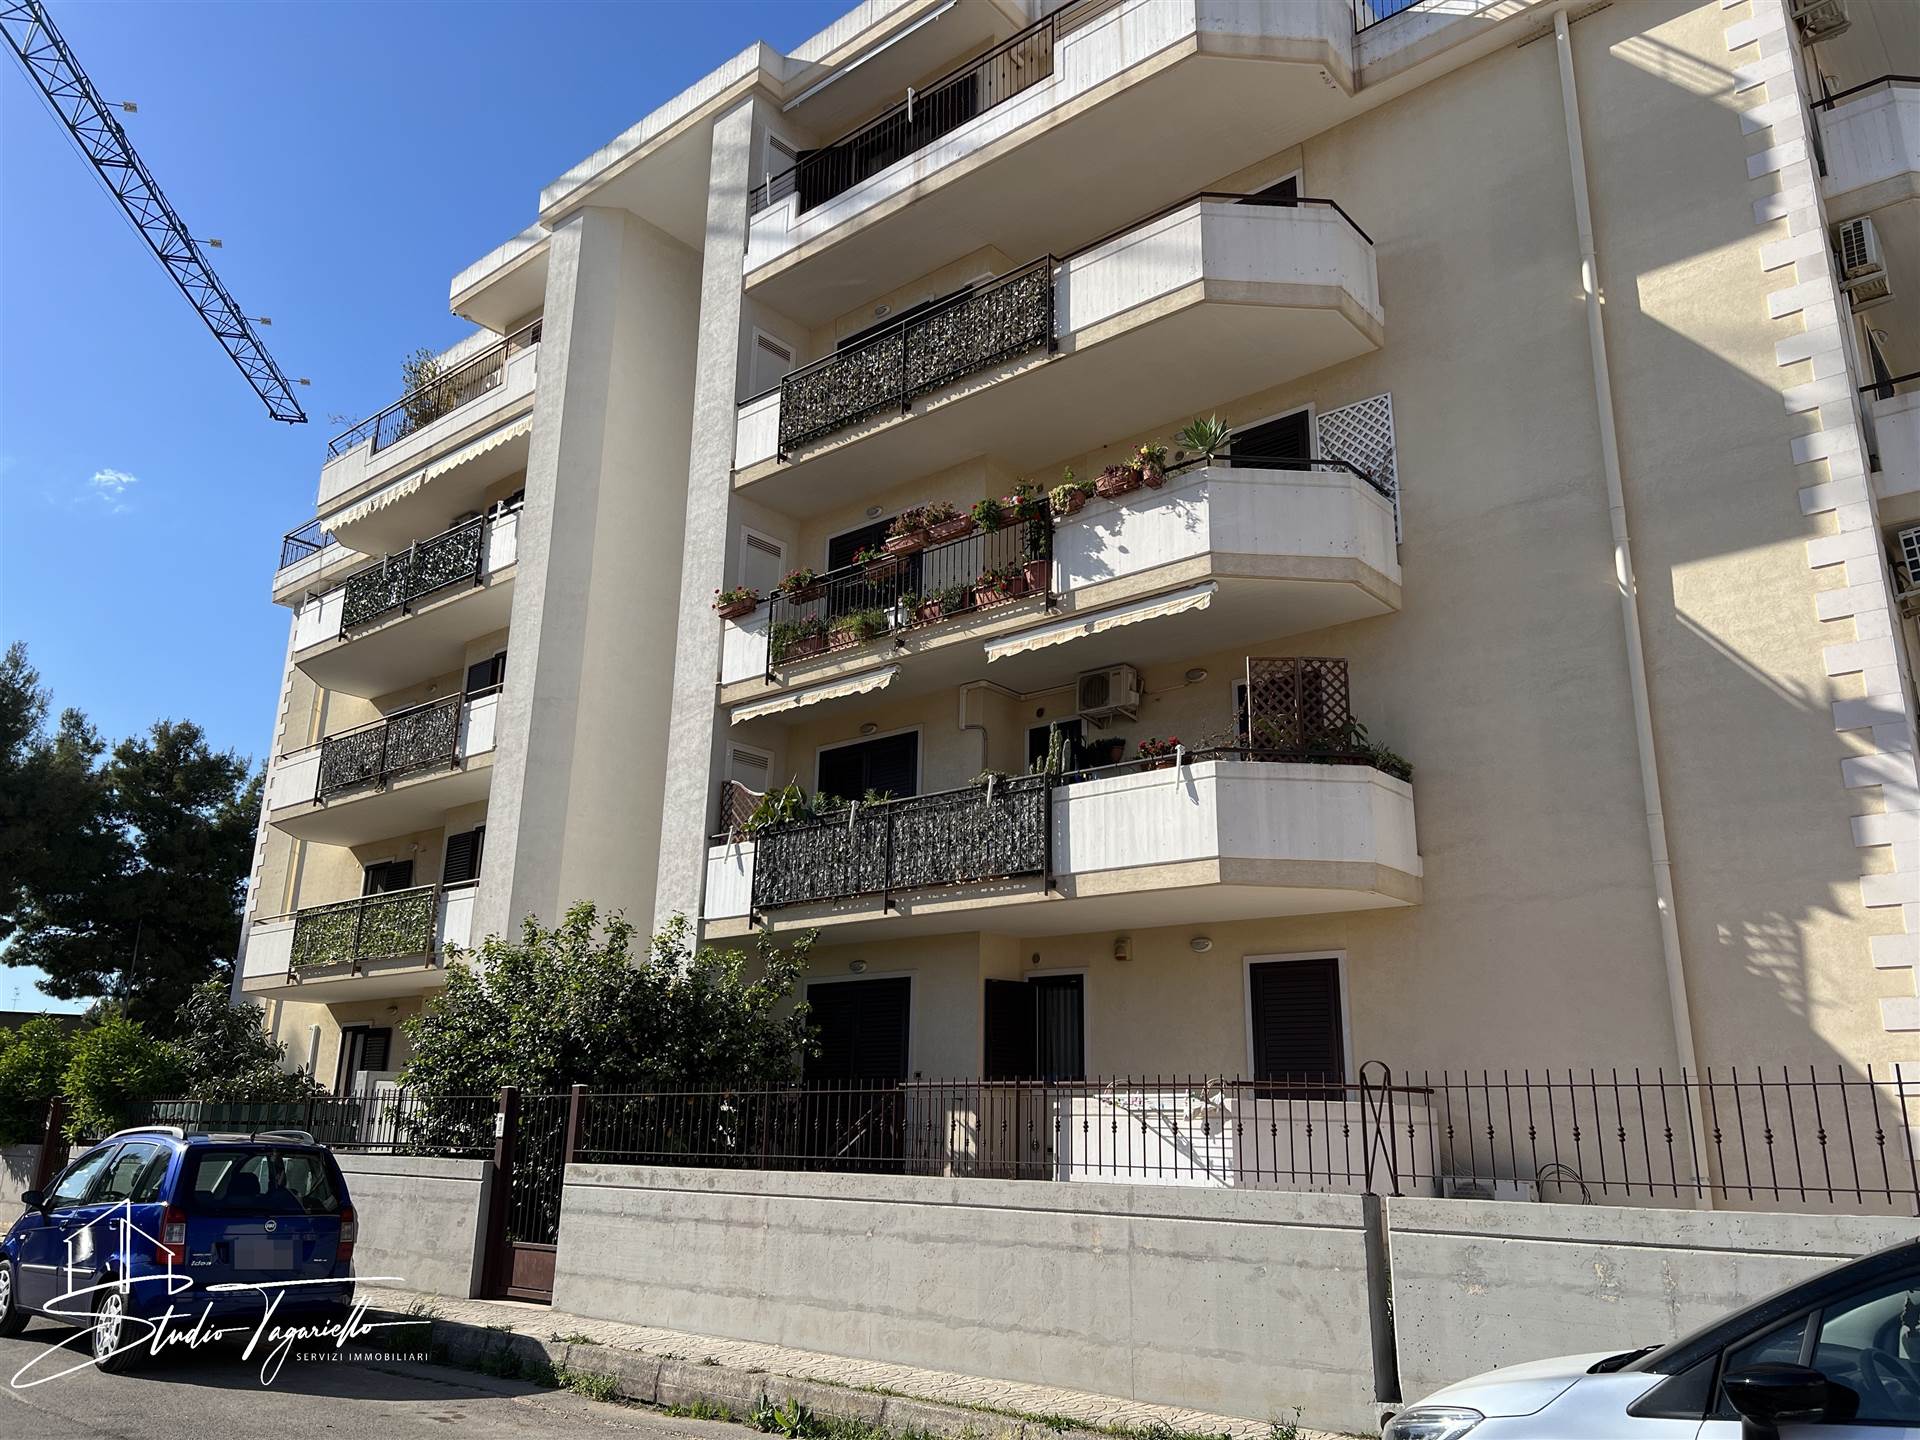 Appartamento in vendita a Palagiano, 4 locali, prezzo € 155.000 | PortaleAgenzieImmobiliari.it